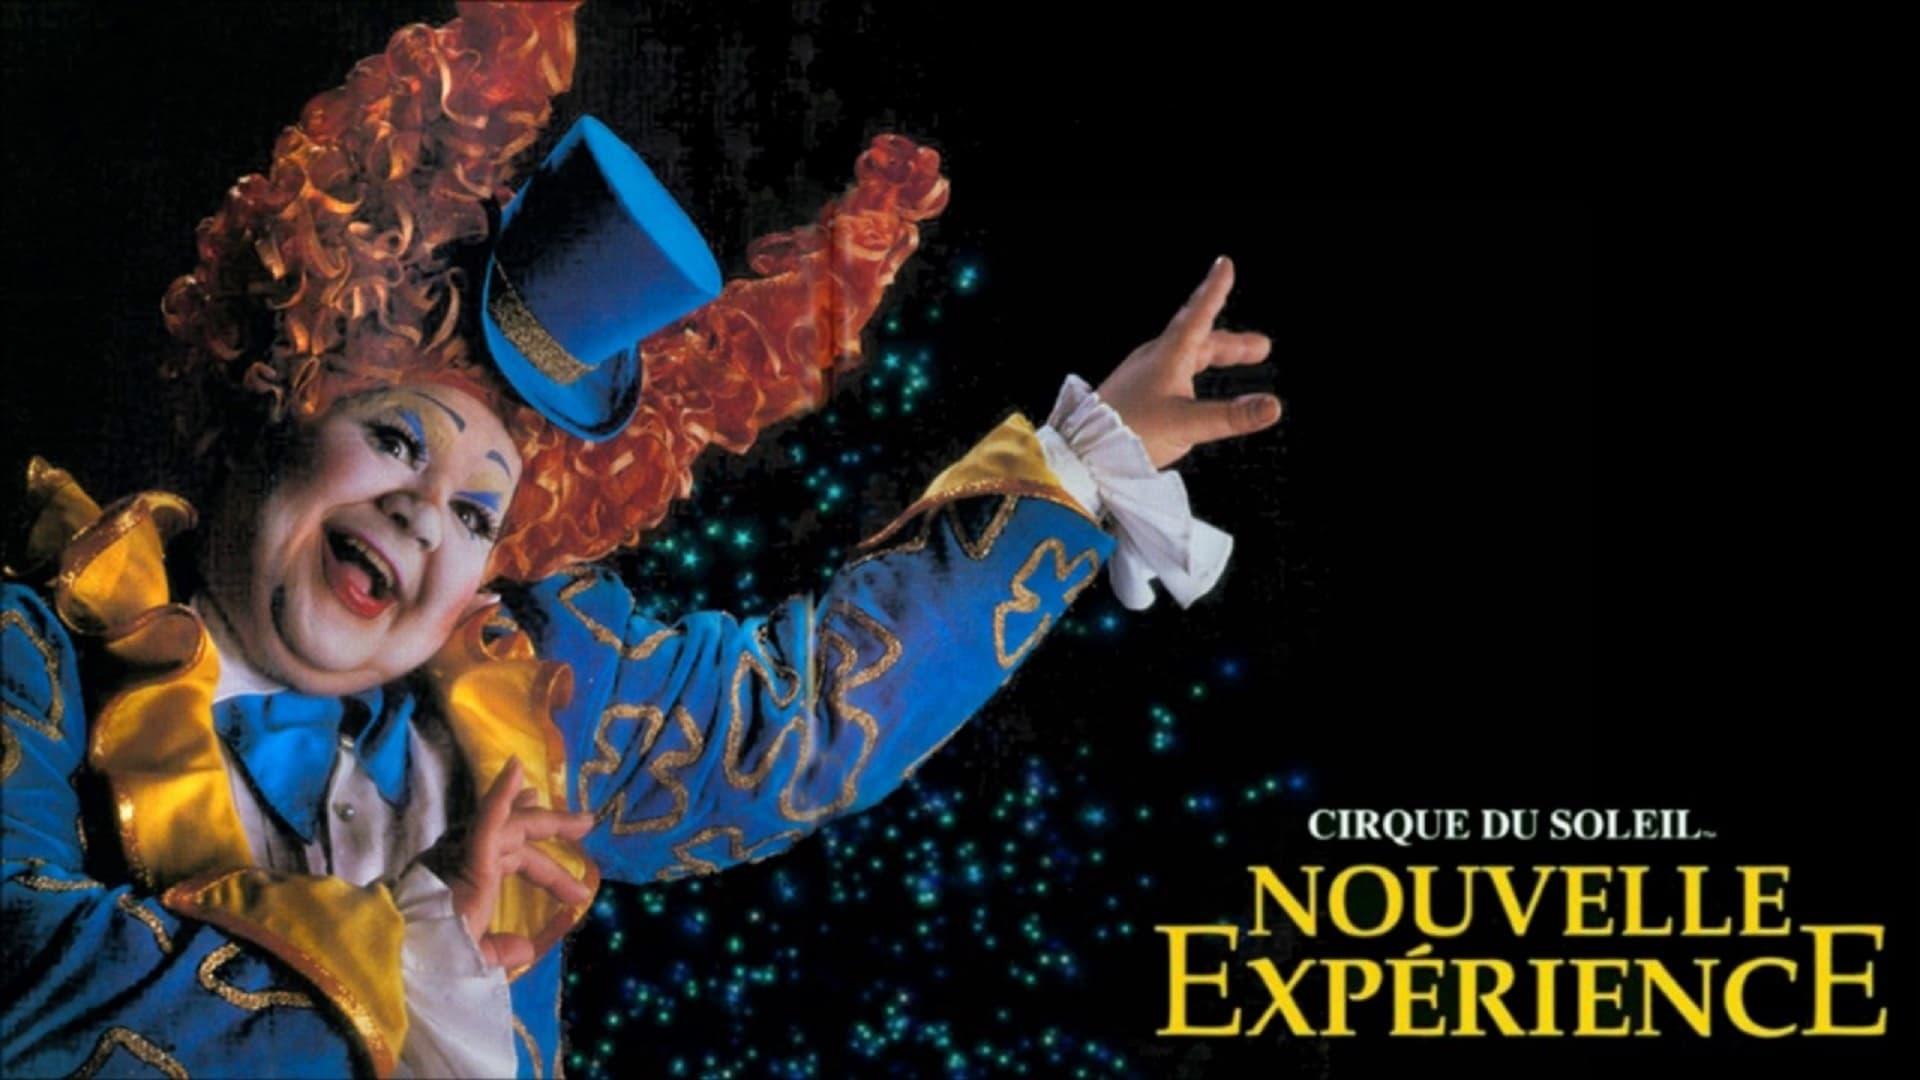 Cirque du Soleil: Nouvelle Expérience backdrop